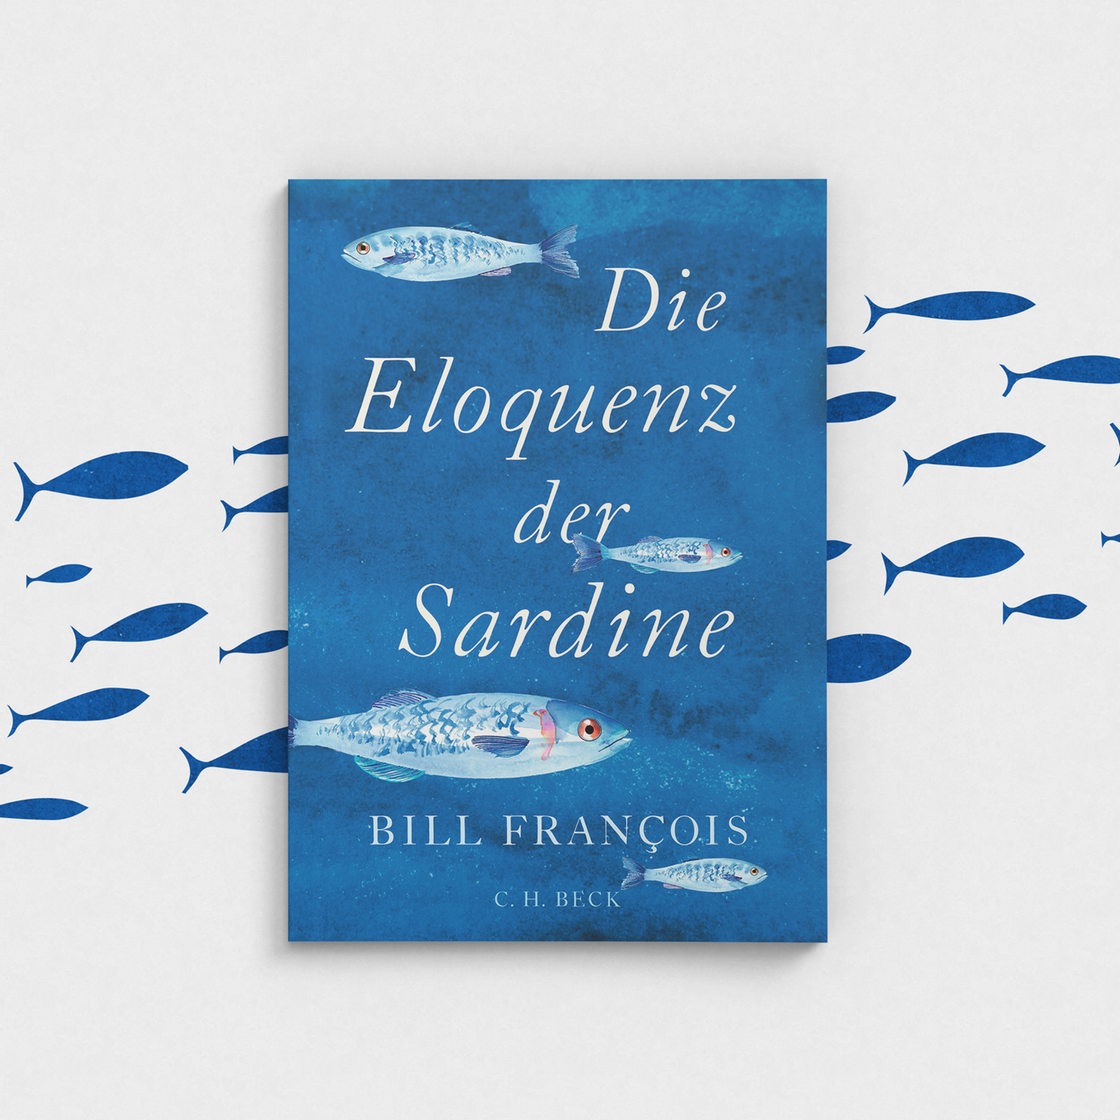 Das Cover des Buchs "Die Eloquenz der Sardine"